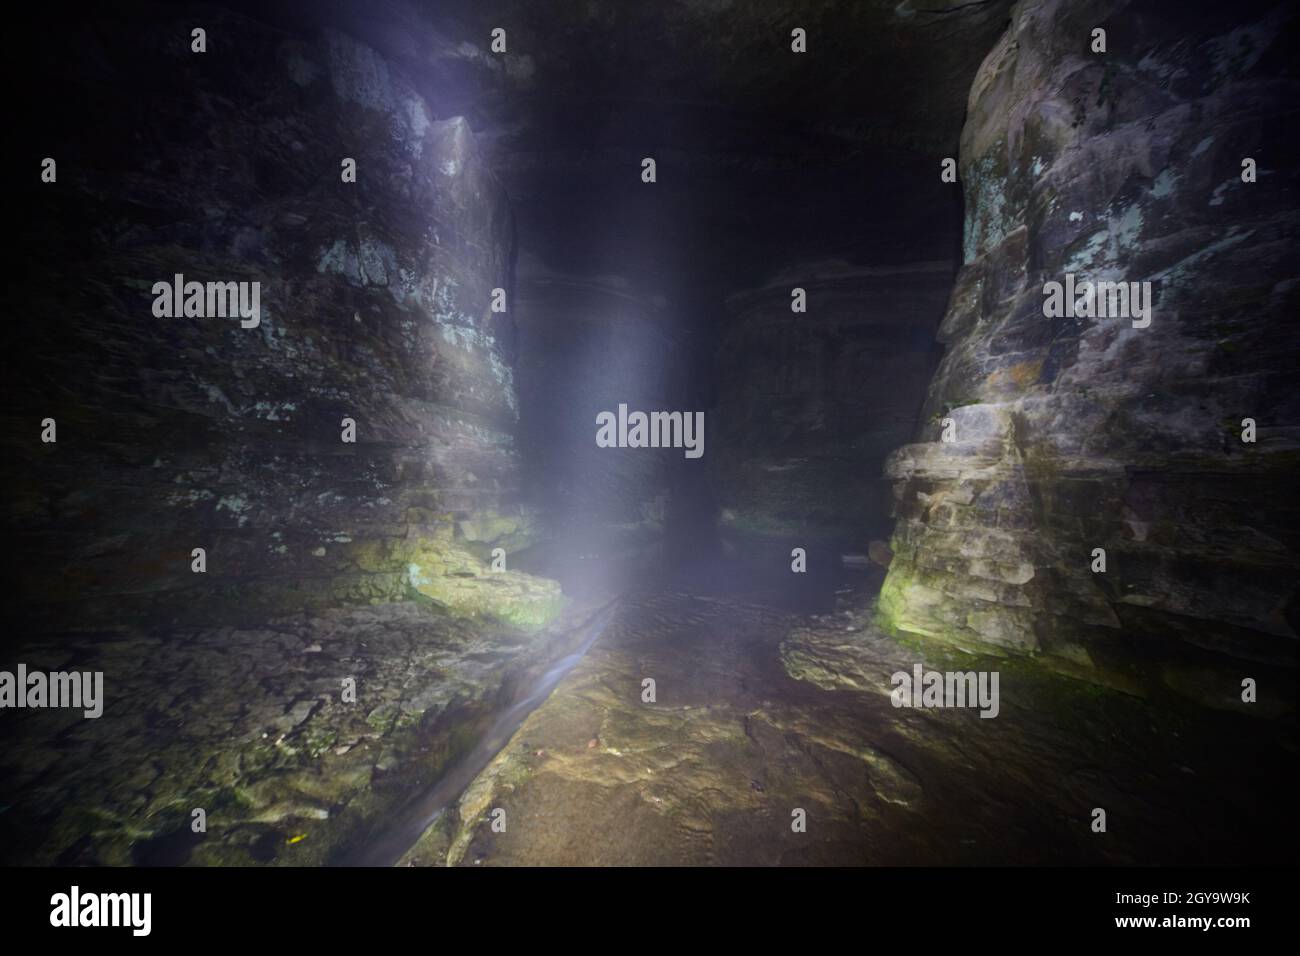 Arbre de lumière dans une grande grotte avec une petite crique qui le traverse Banque D'Images